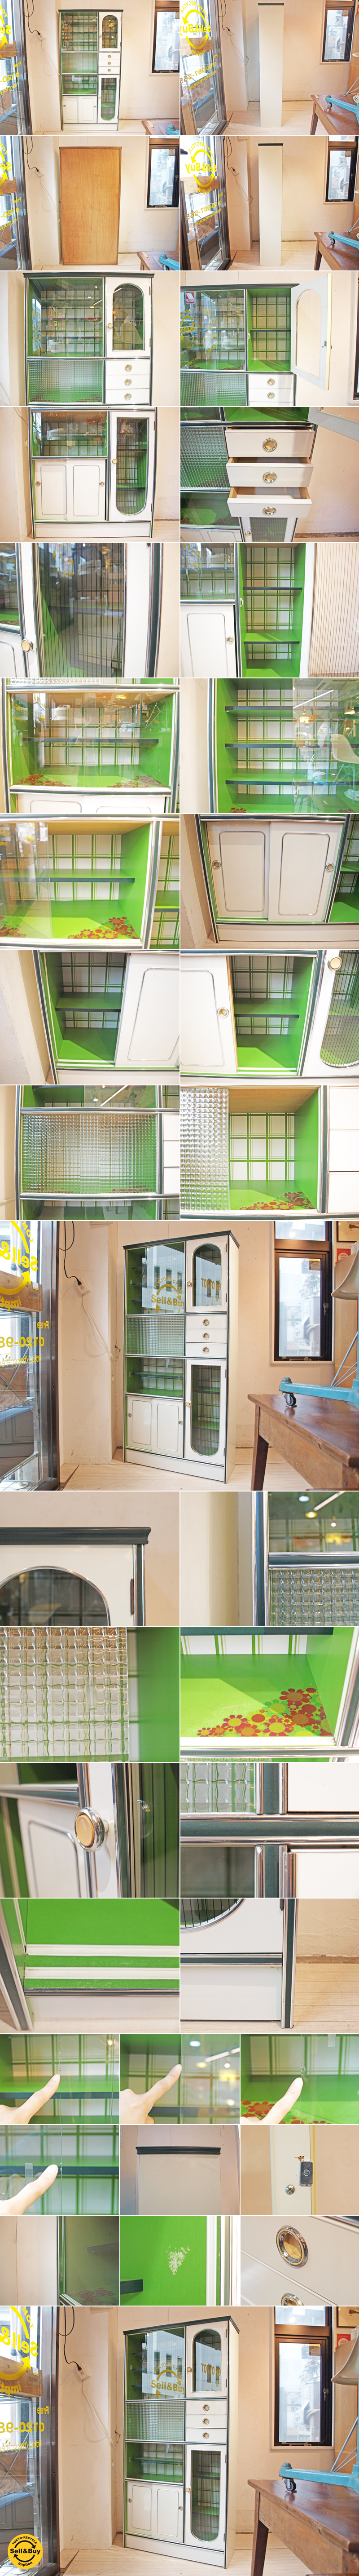 レトロポップ 食器棚 アーチ窓 ジャパンビンテージ カップボード 昭和